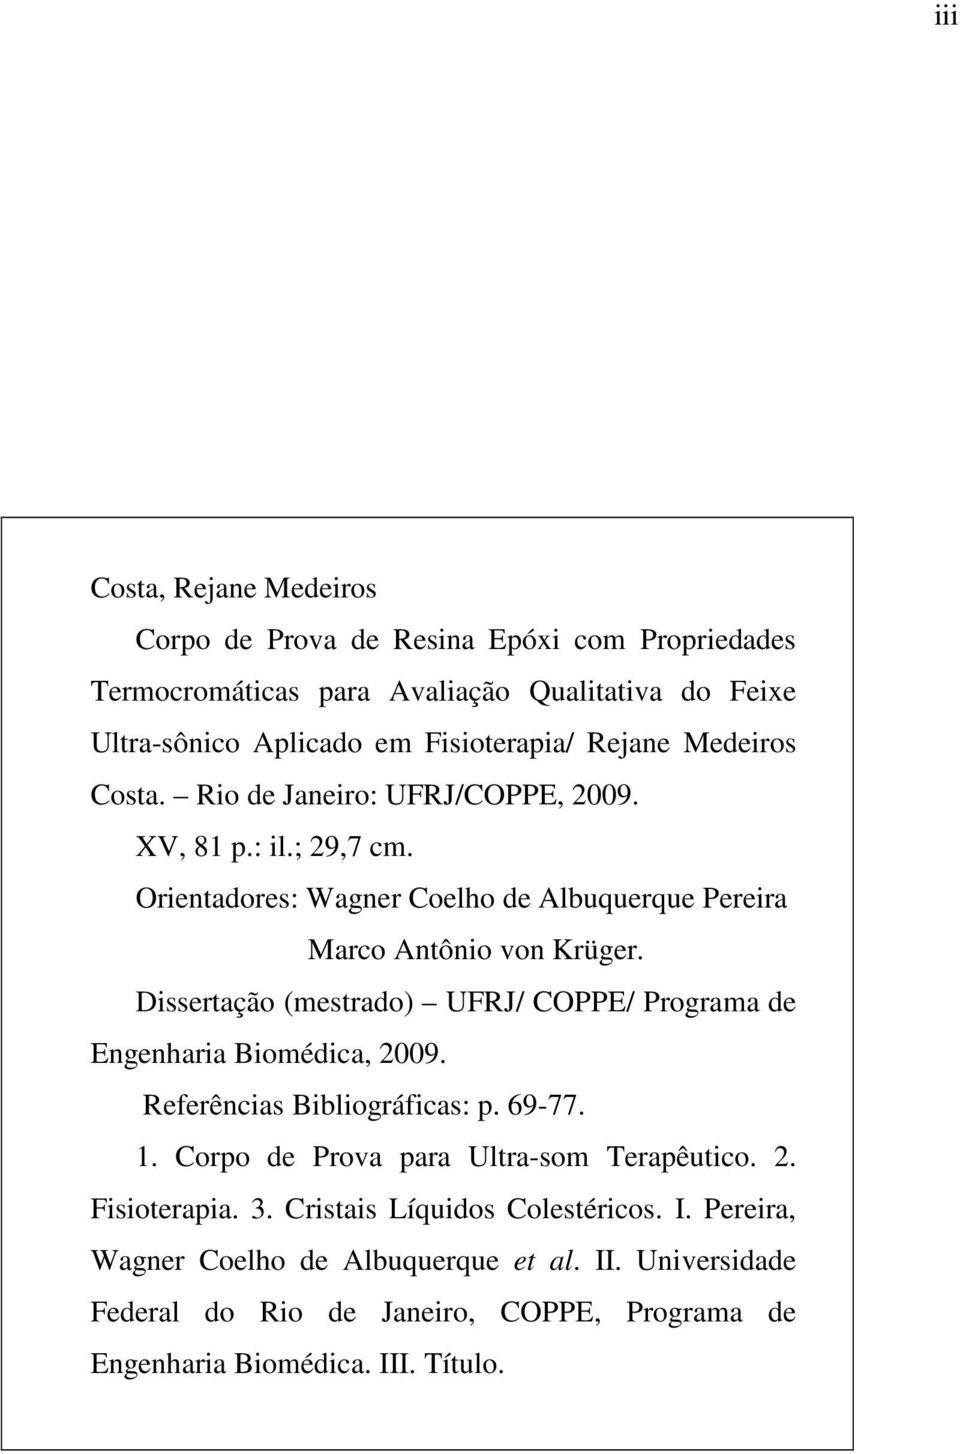 Dissertação (mestrado) UFRJ/ COPPE/ Programa de Engenharia Biomédica, 2009. Referências Bibliográficas: p. 69-77. 1. Corpo de Prova para Ultra-som Terapêutico. 2. Fisioterapia.